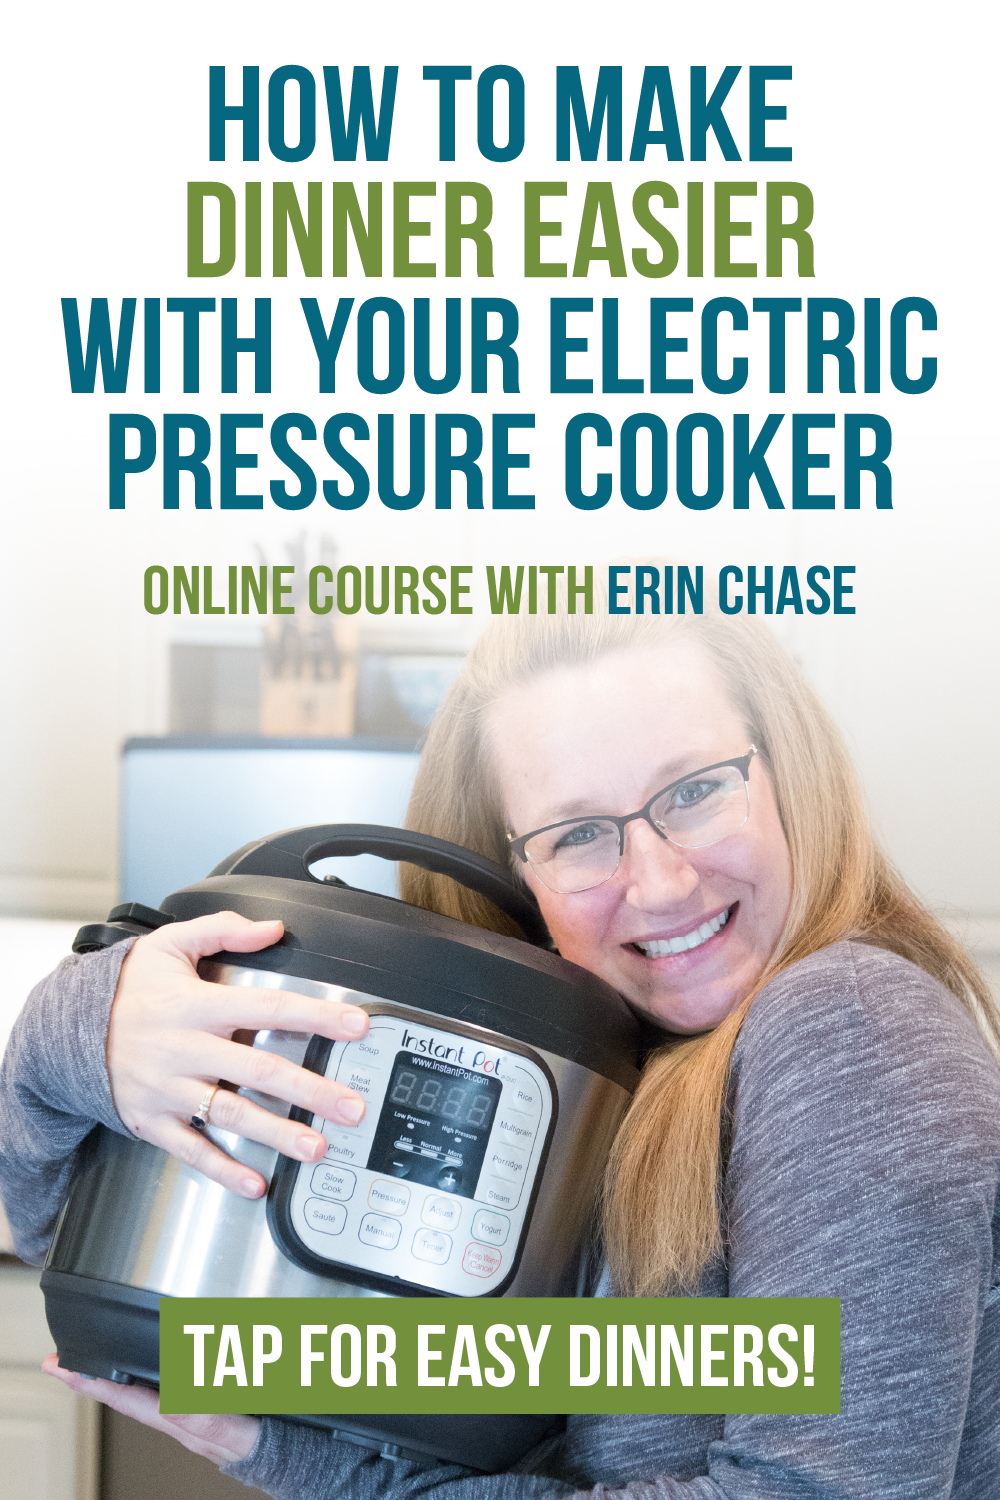 Erin's Oven Guide 101 For Better Baking